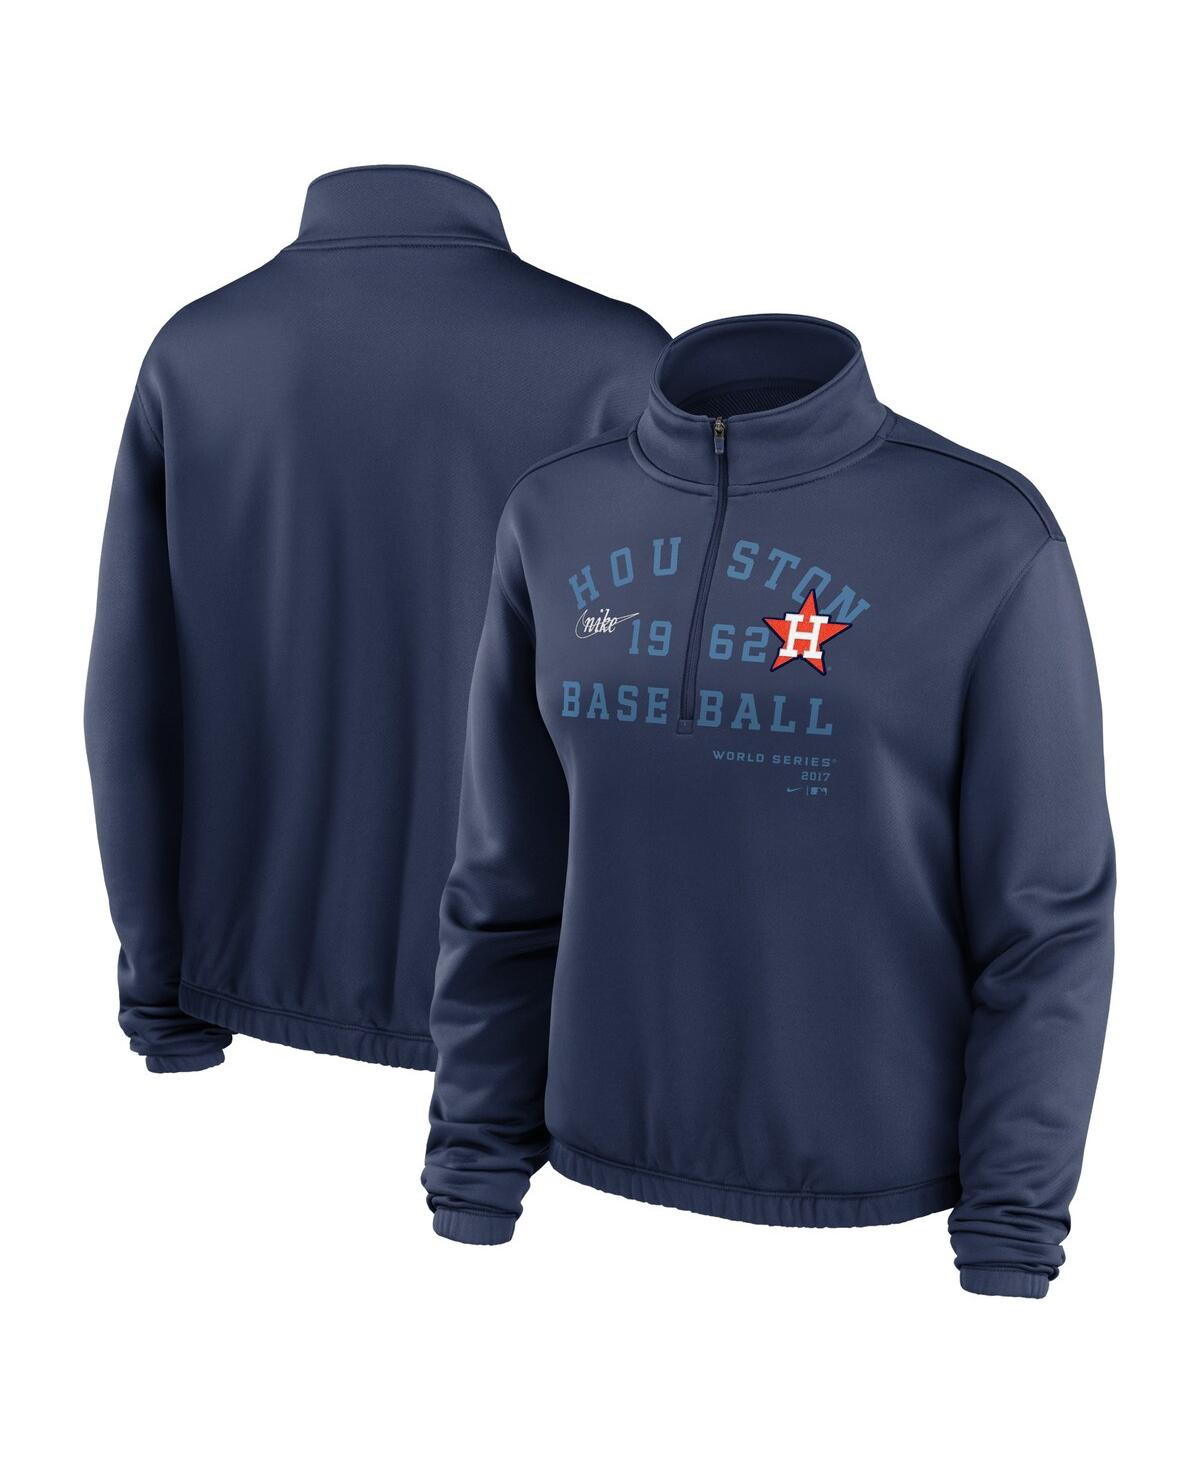 Women's Nike Navy Houston Astros Rewind Splice Half-Zip Sweatshirt - Navy